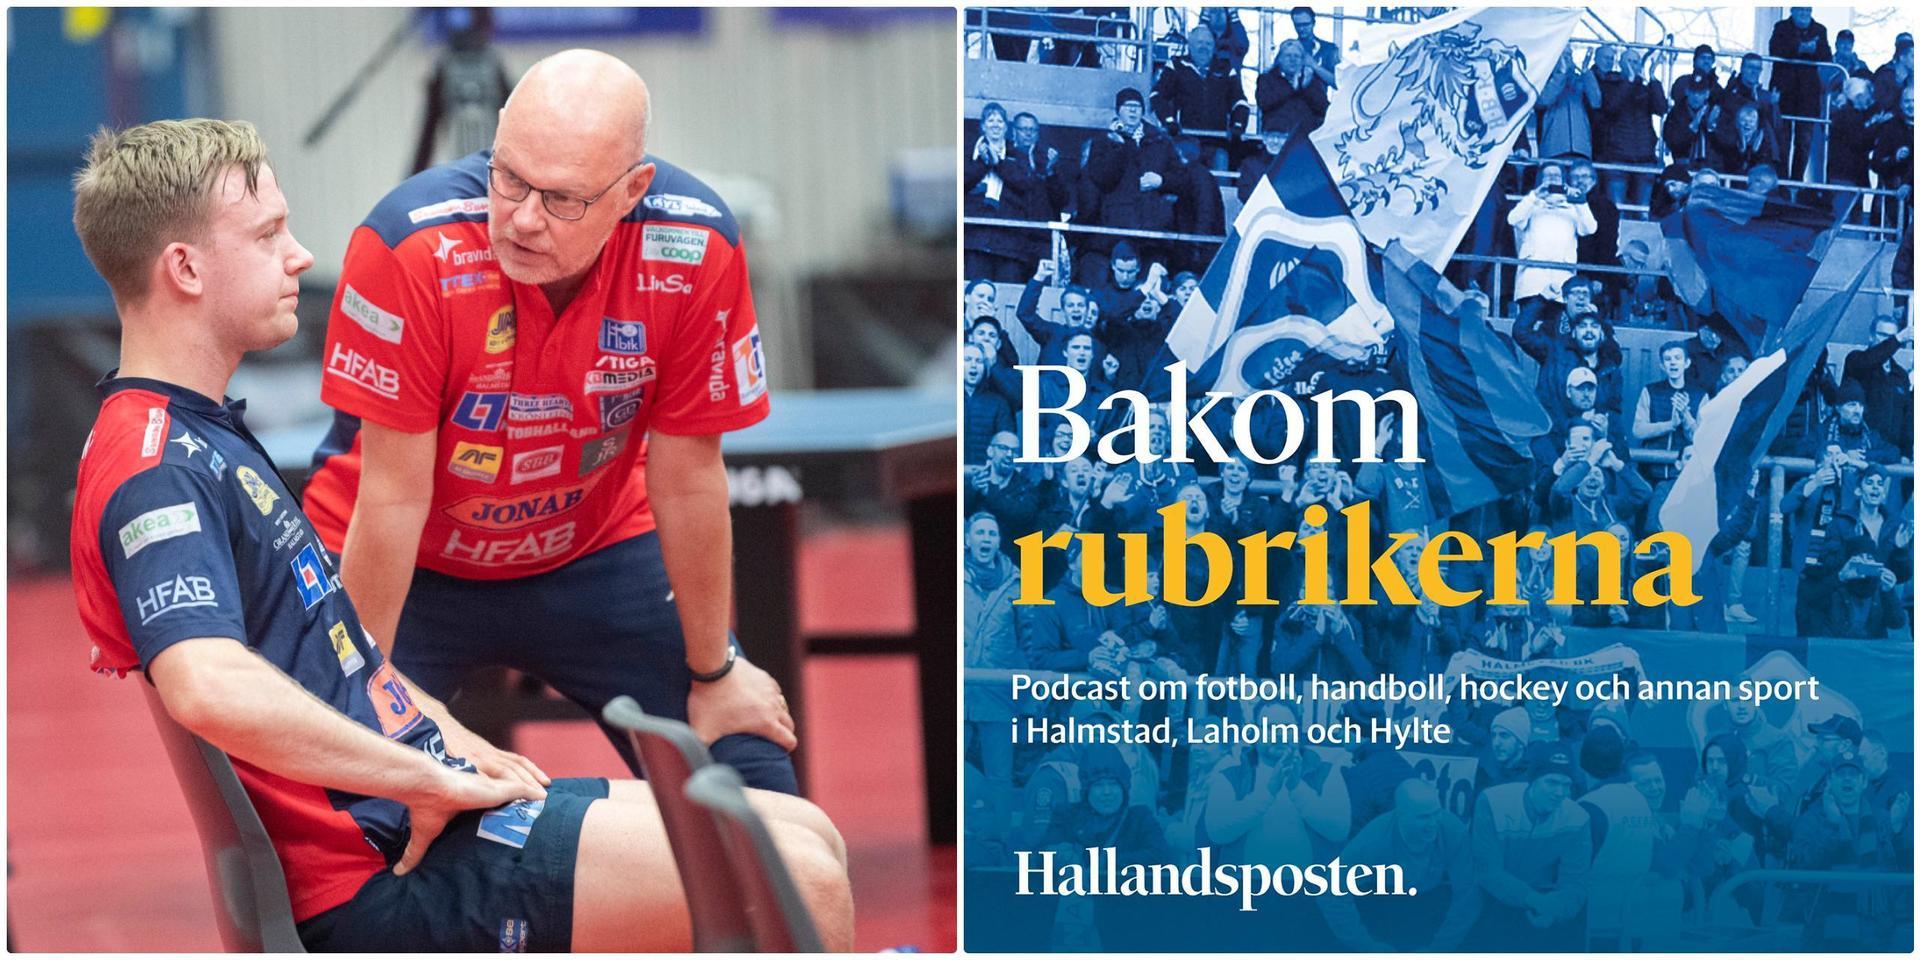 Ulf ”Tickan” Carlsson är senaste gästen i HP:s sportpodd Bakom rubrikerna. Här berättar han om vägen tillbaka efter att ha drabbats av cancer för andra gången, livet i dag och jakten på ett nytt SM-guld.